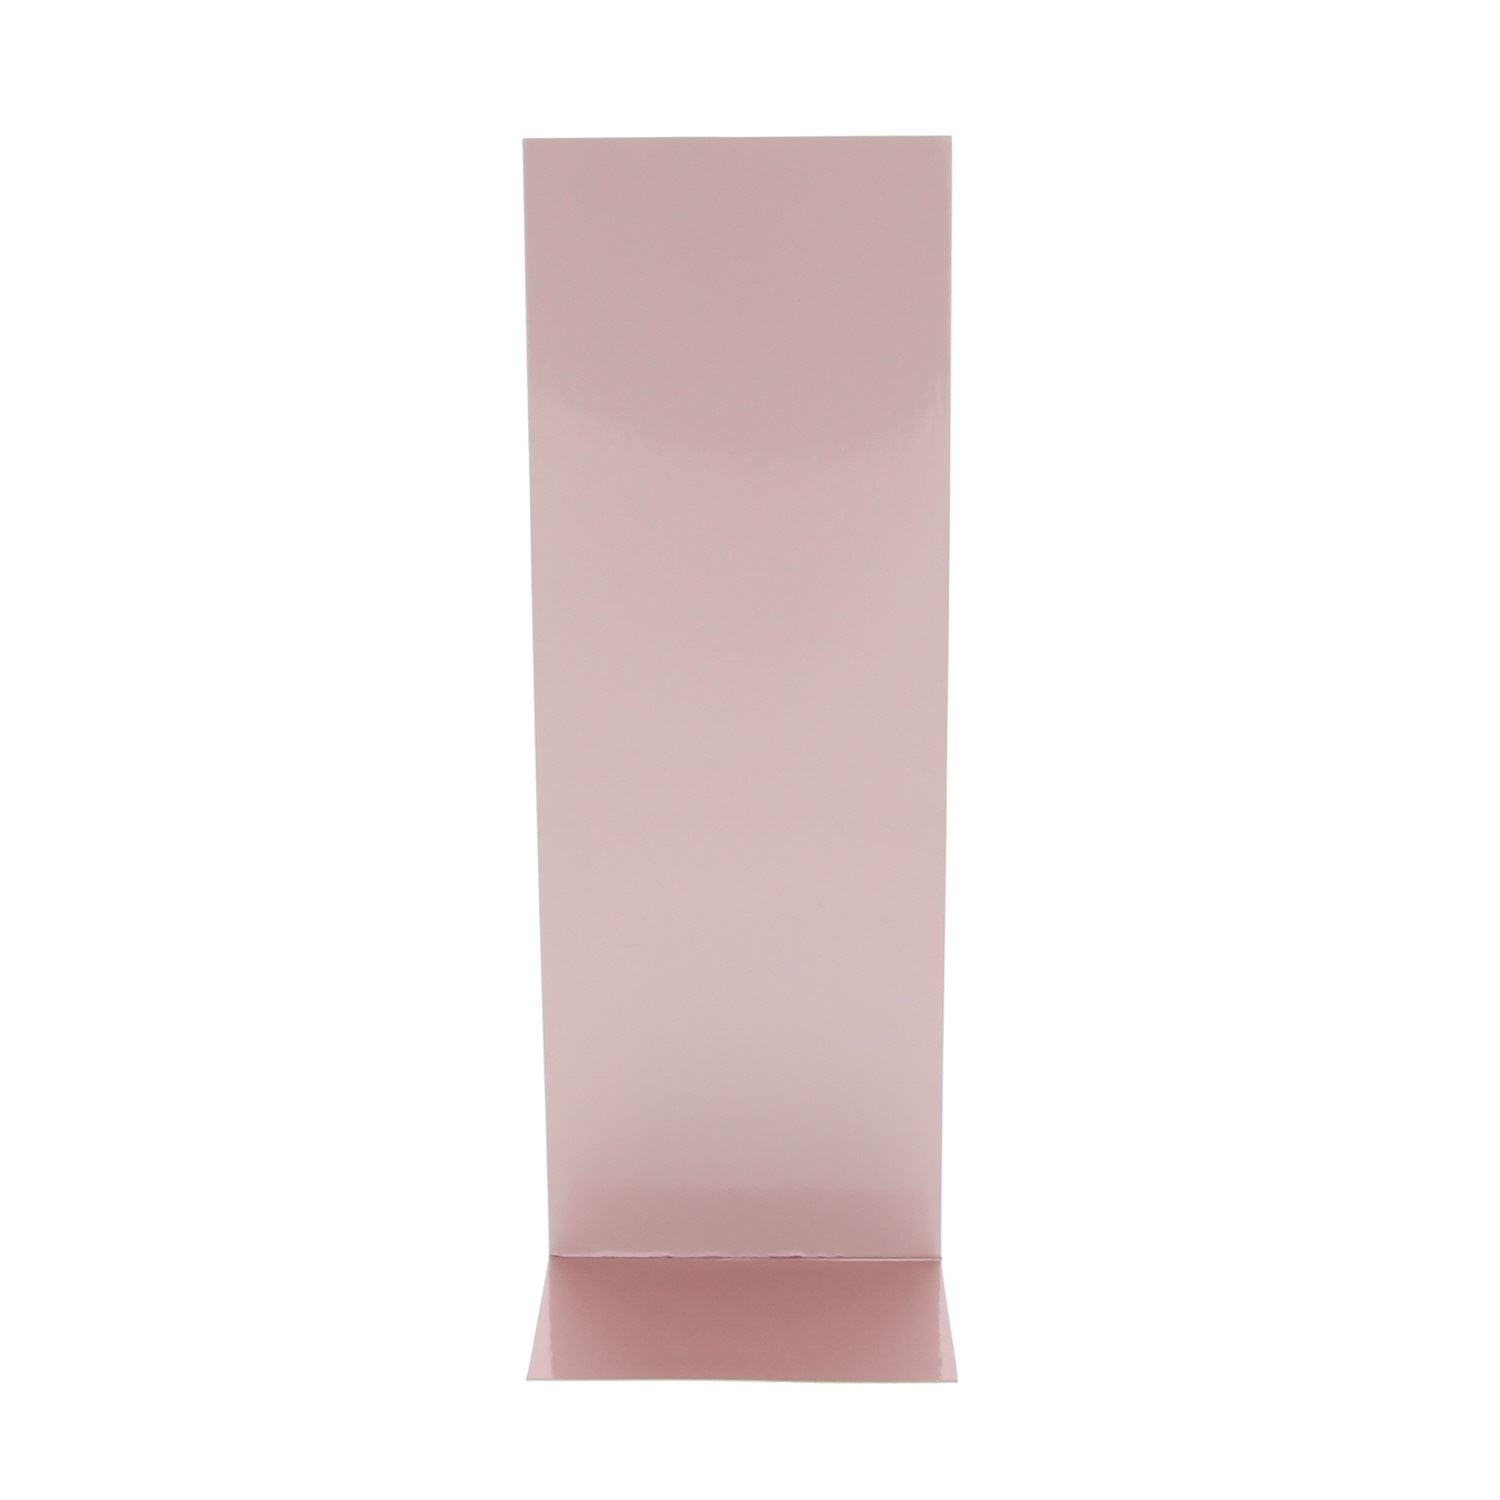 J-carton -  Rosé or - 77*50*215 mm - 100 pièces